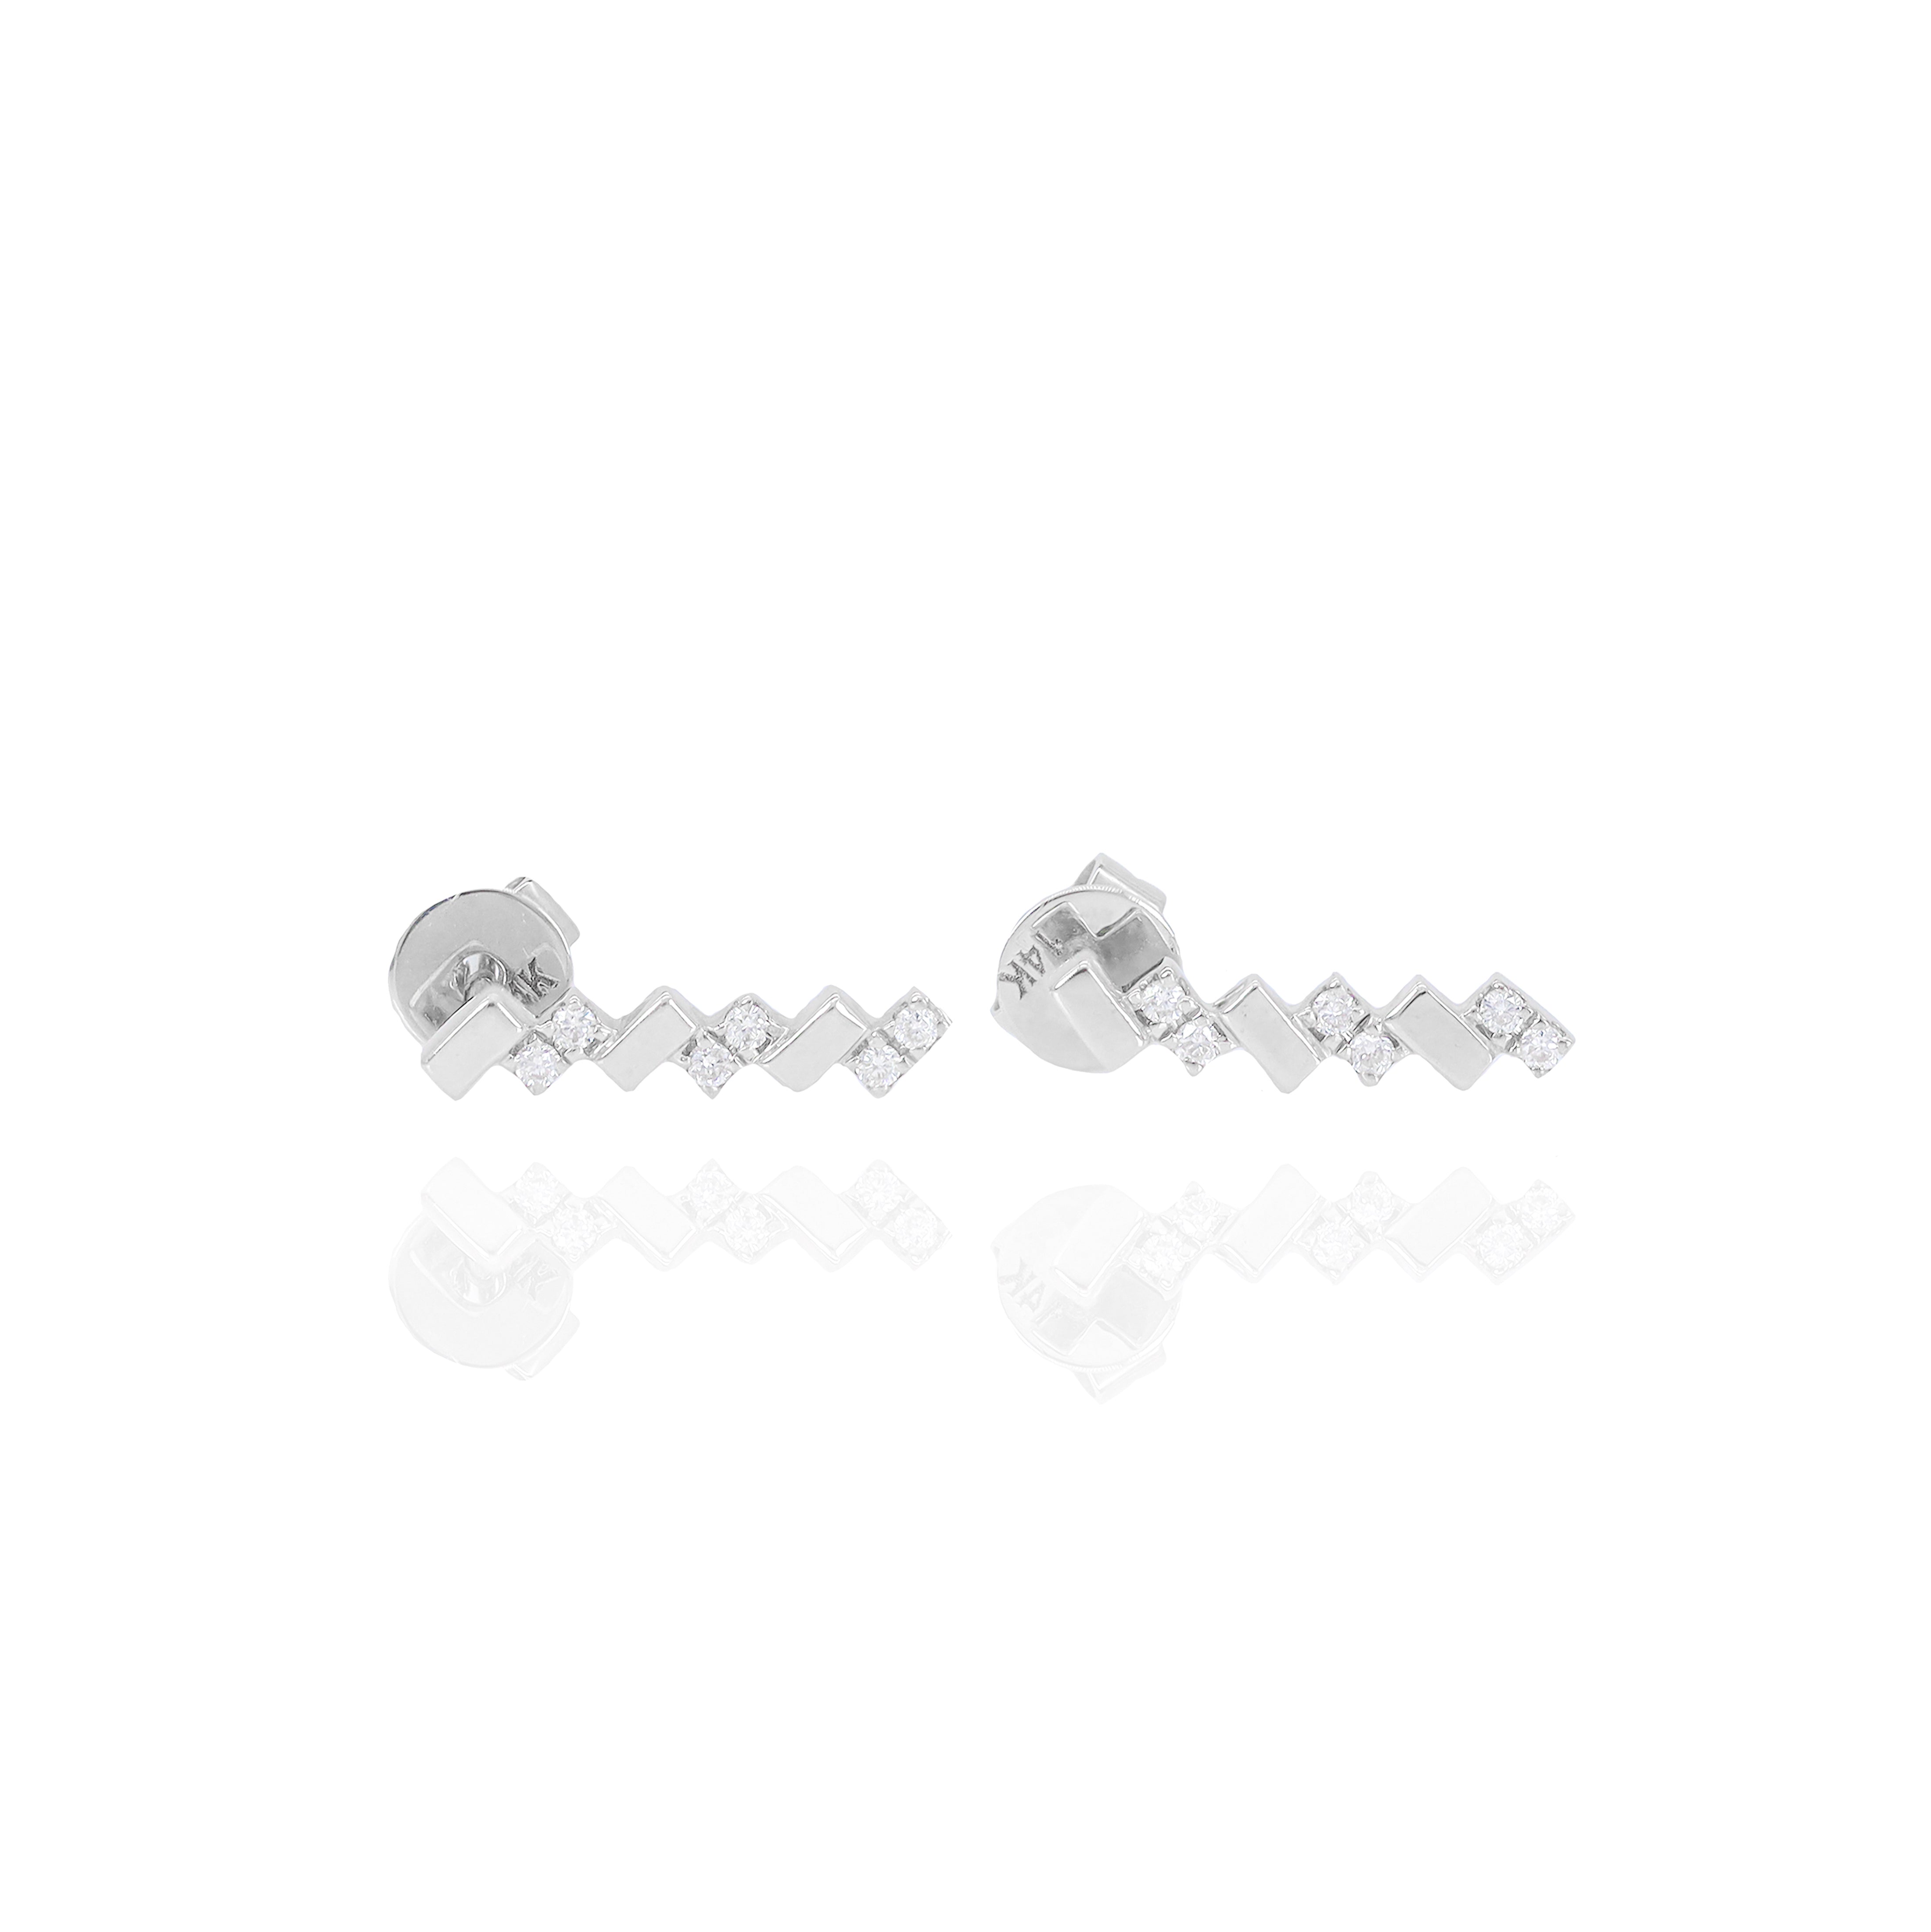 Alternating Gold & Diamond Earrings